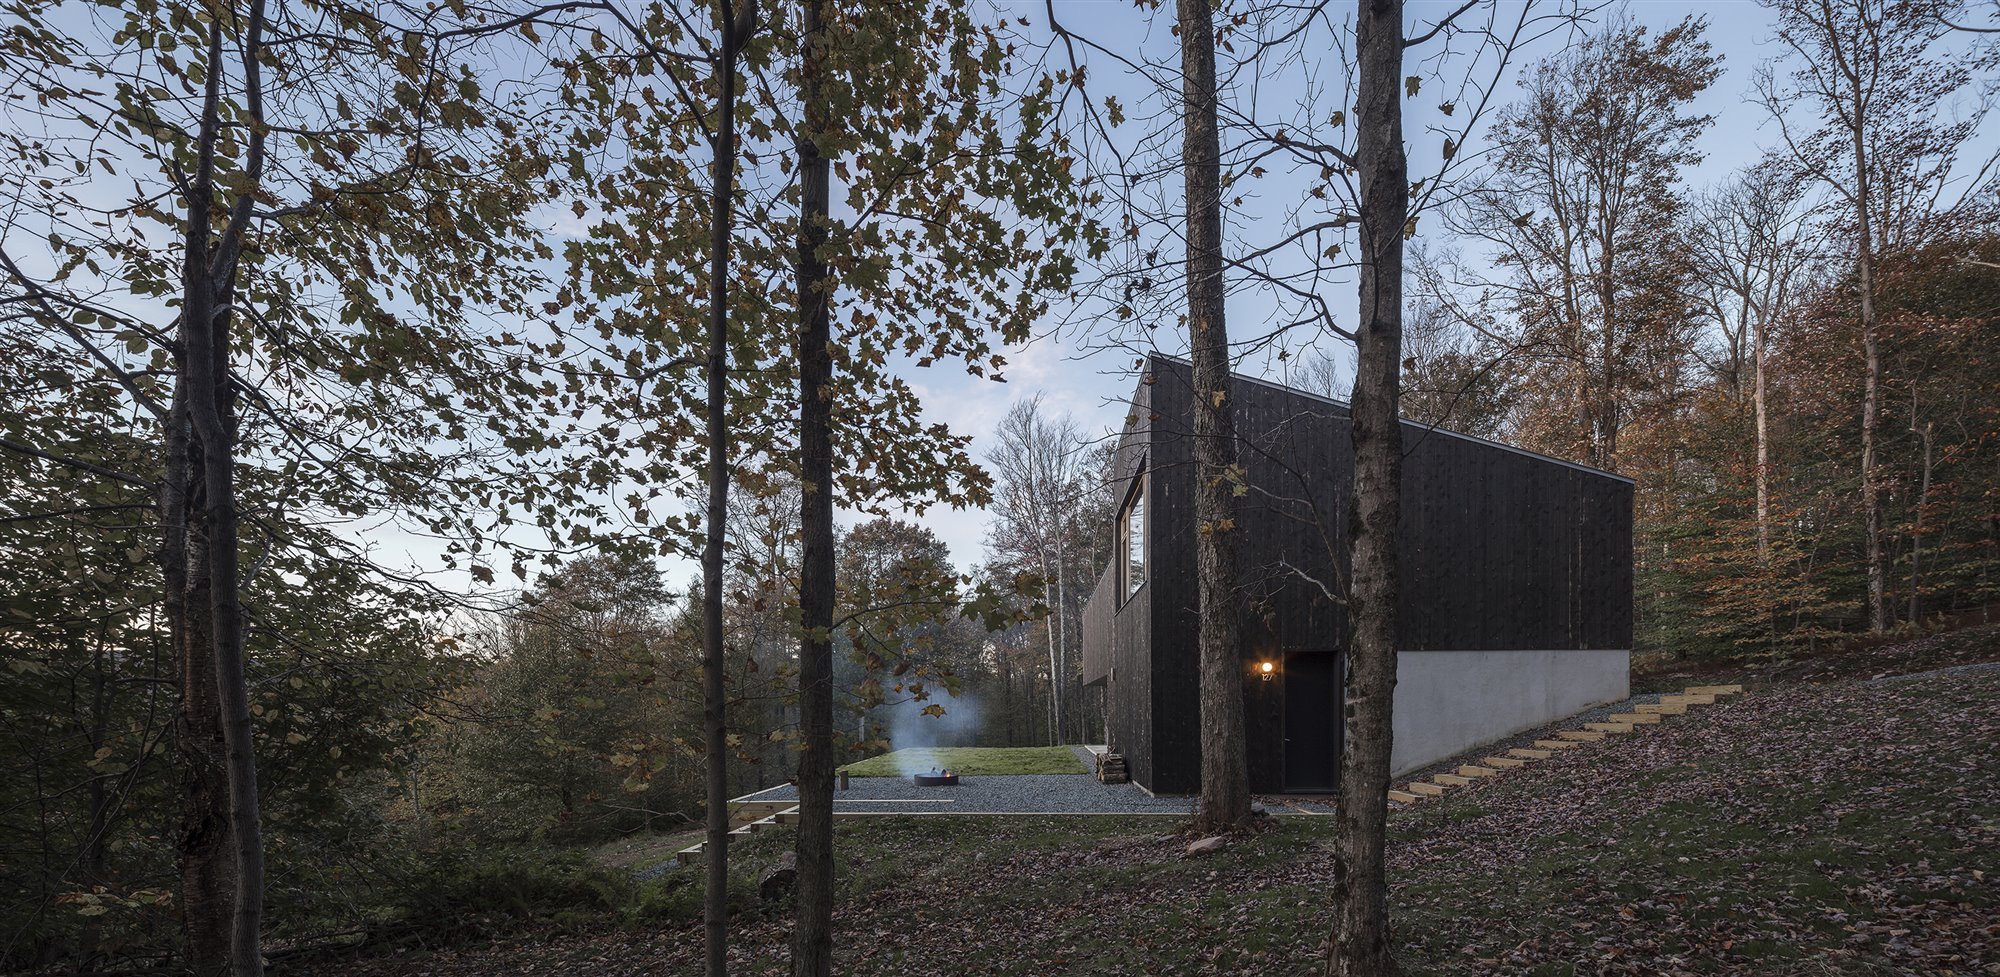 Casa moderna en los catskills de nueva york fachada en mitad del bosque